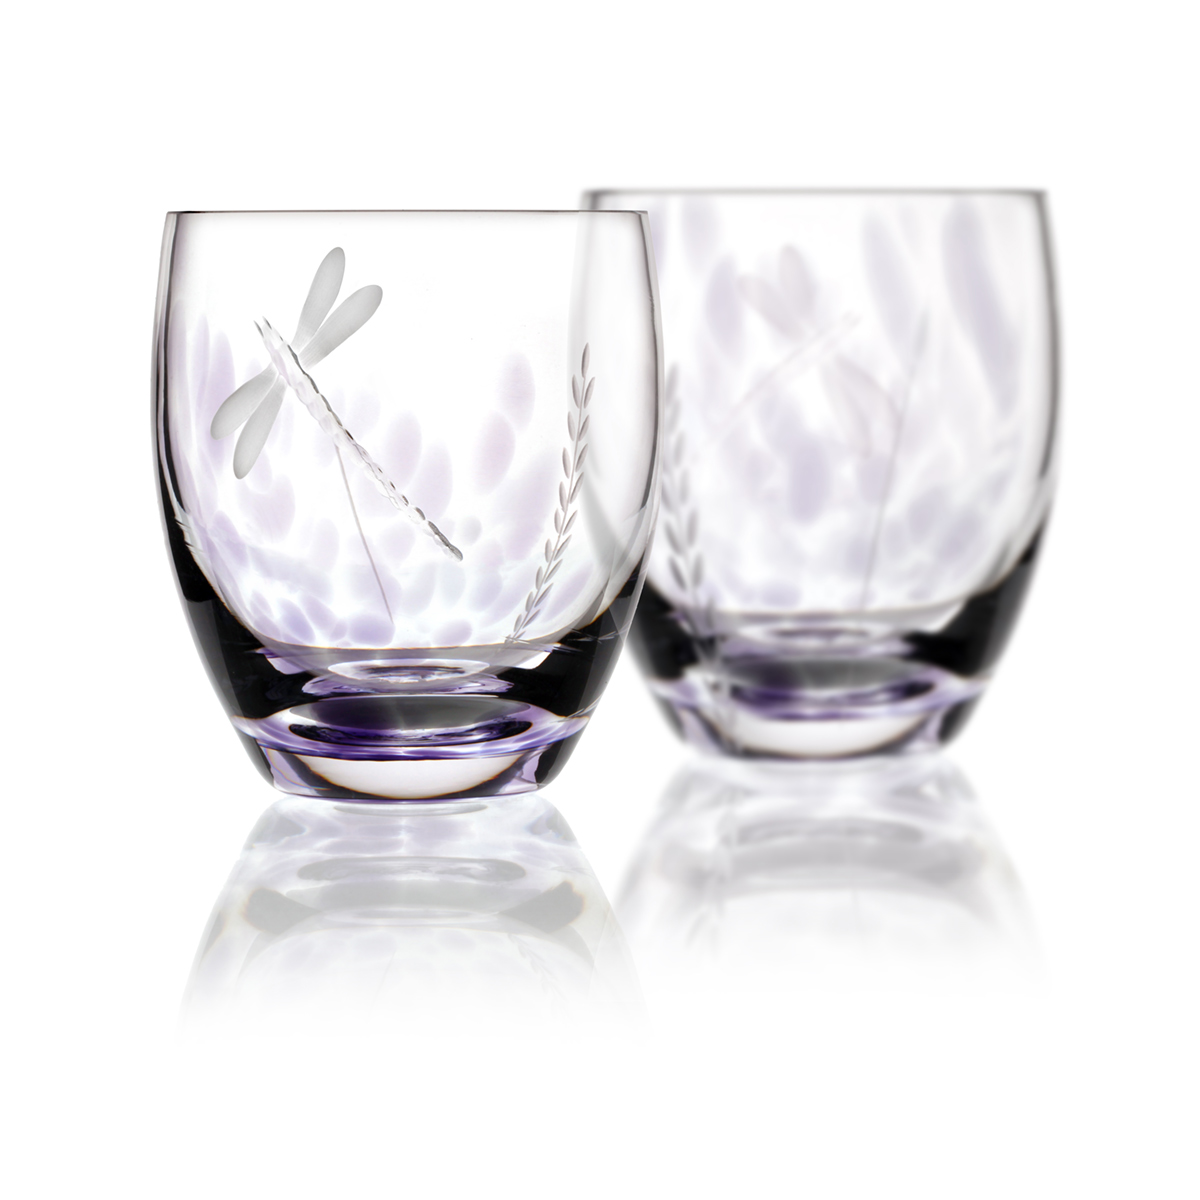 2 x Wild Heather Whiskey Tumbler - Handgefertigtes Kristallglas aus Irland